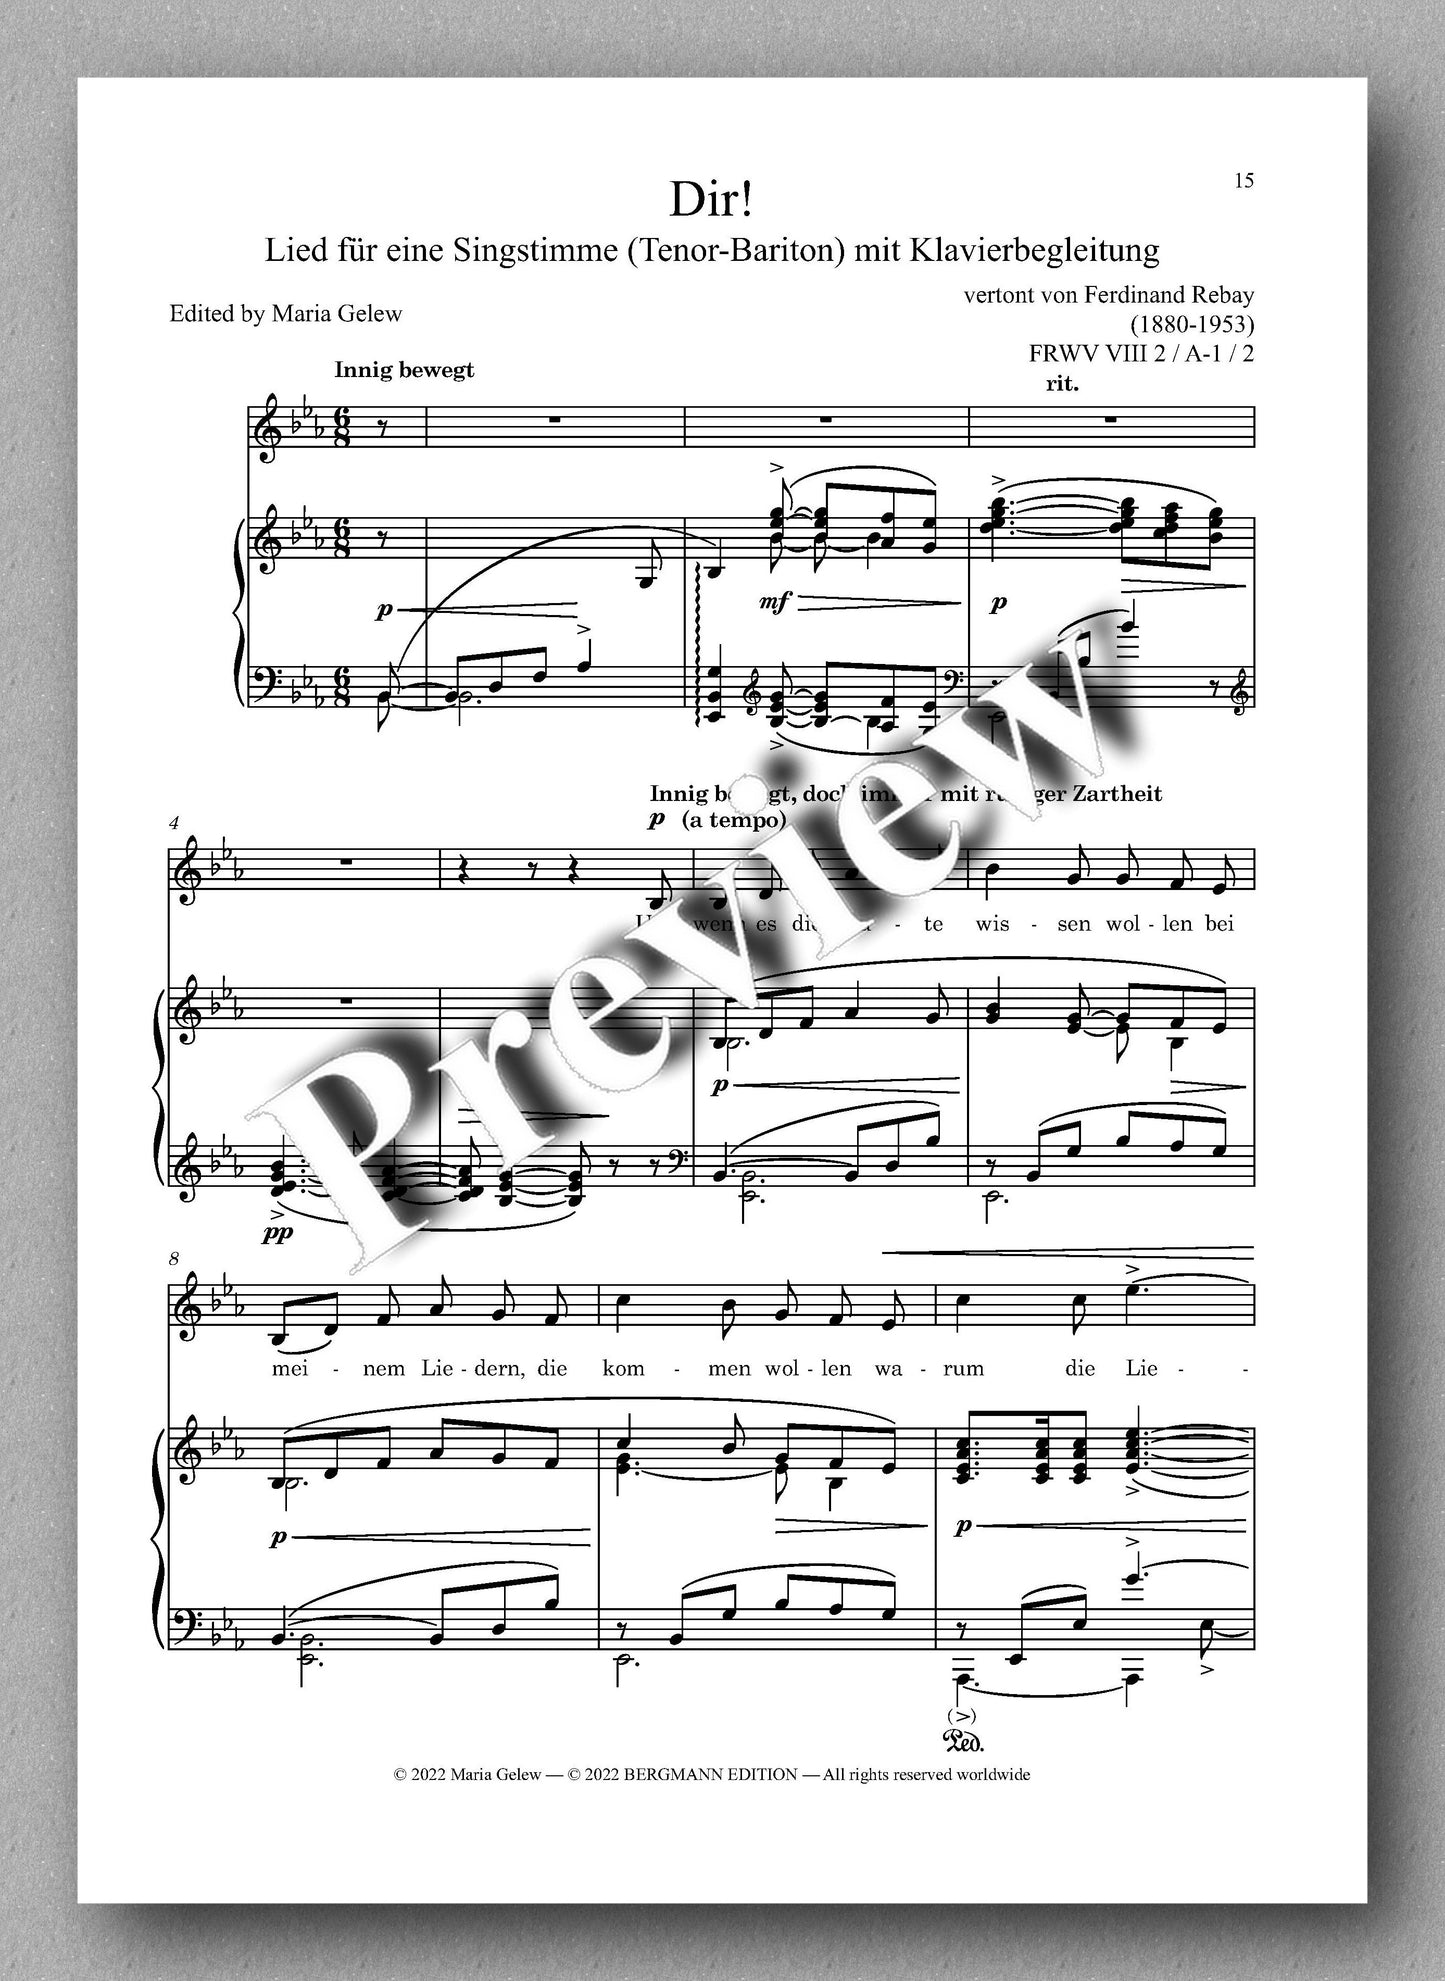 Ferdinand Rebay, Lieder nach eigenen Texten (1916-1917) - Preview of the music score 2